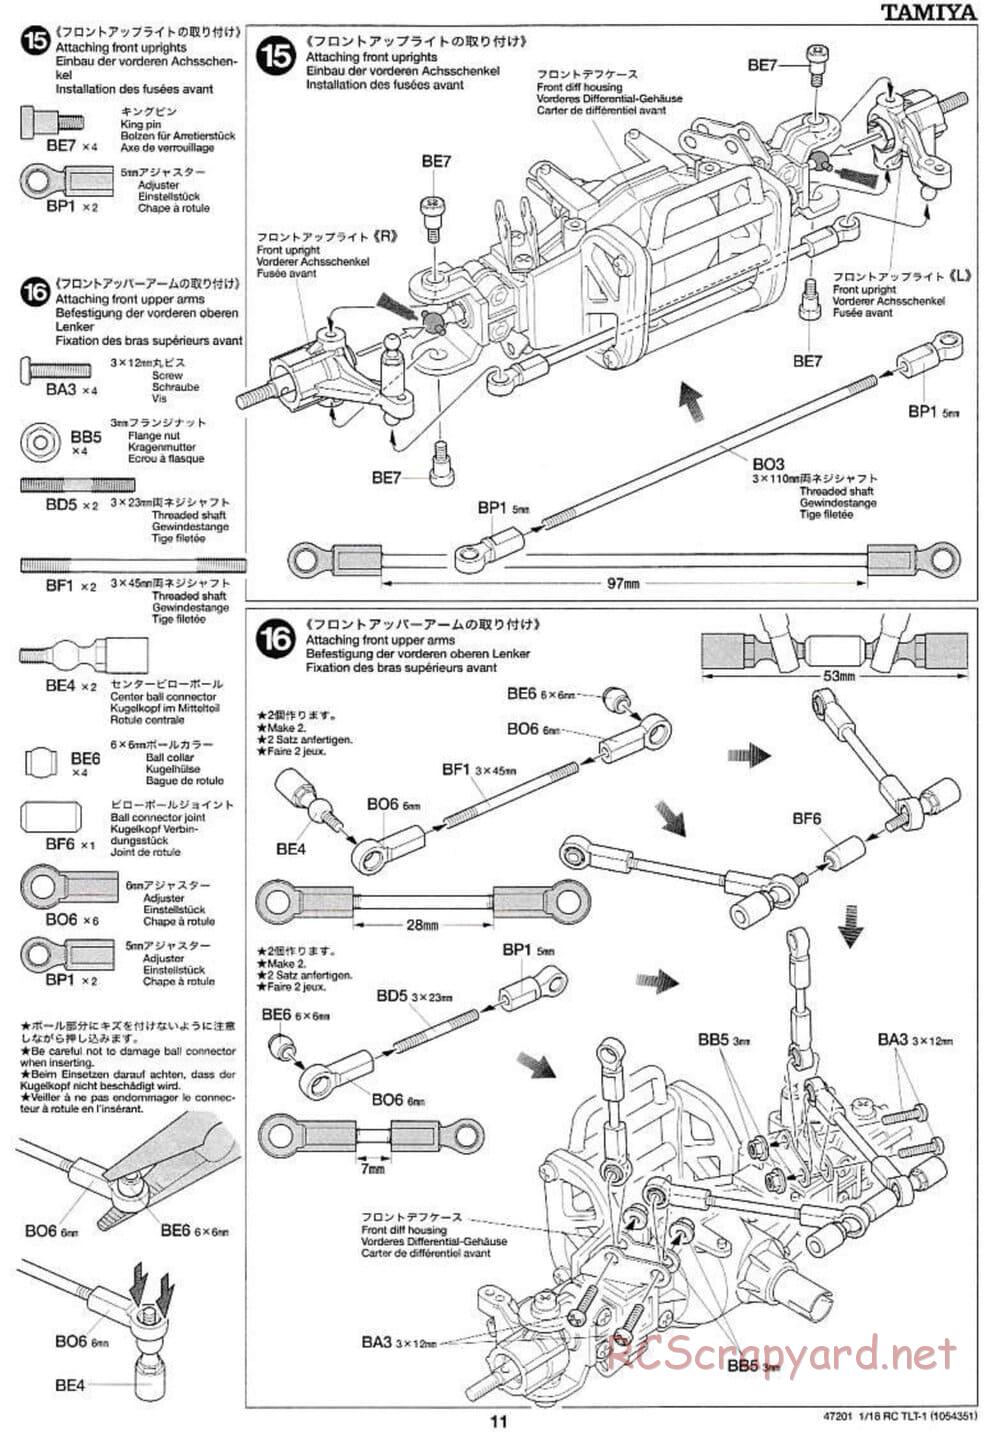 Tamiya - Rock Buster - TLT-1 Chassis - Manual - Page 11